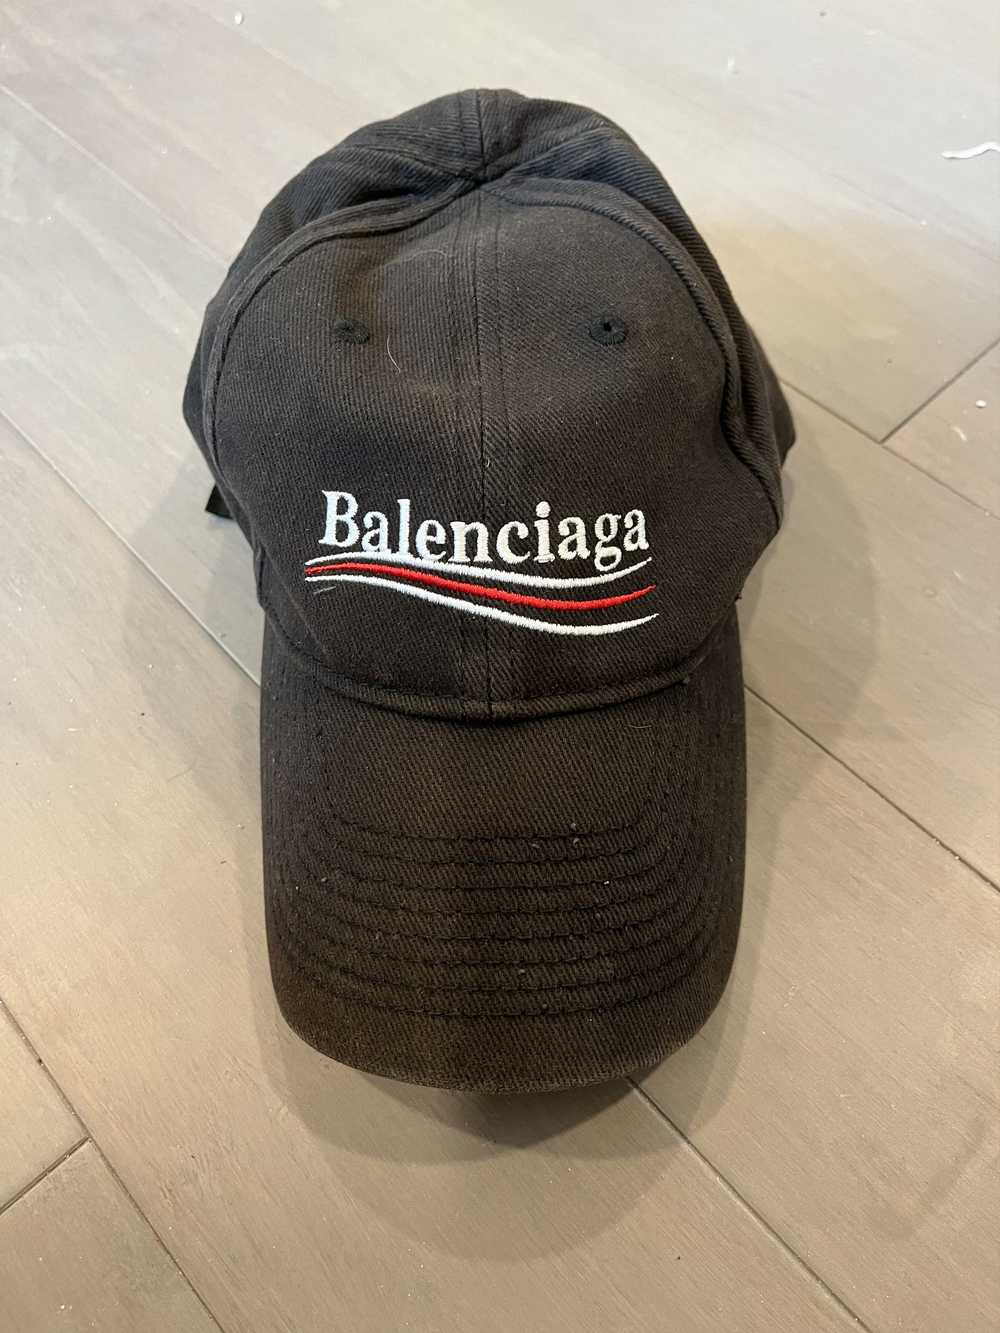 Balenciaga Balenciaga Campaign Hat - image 1